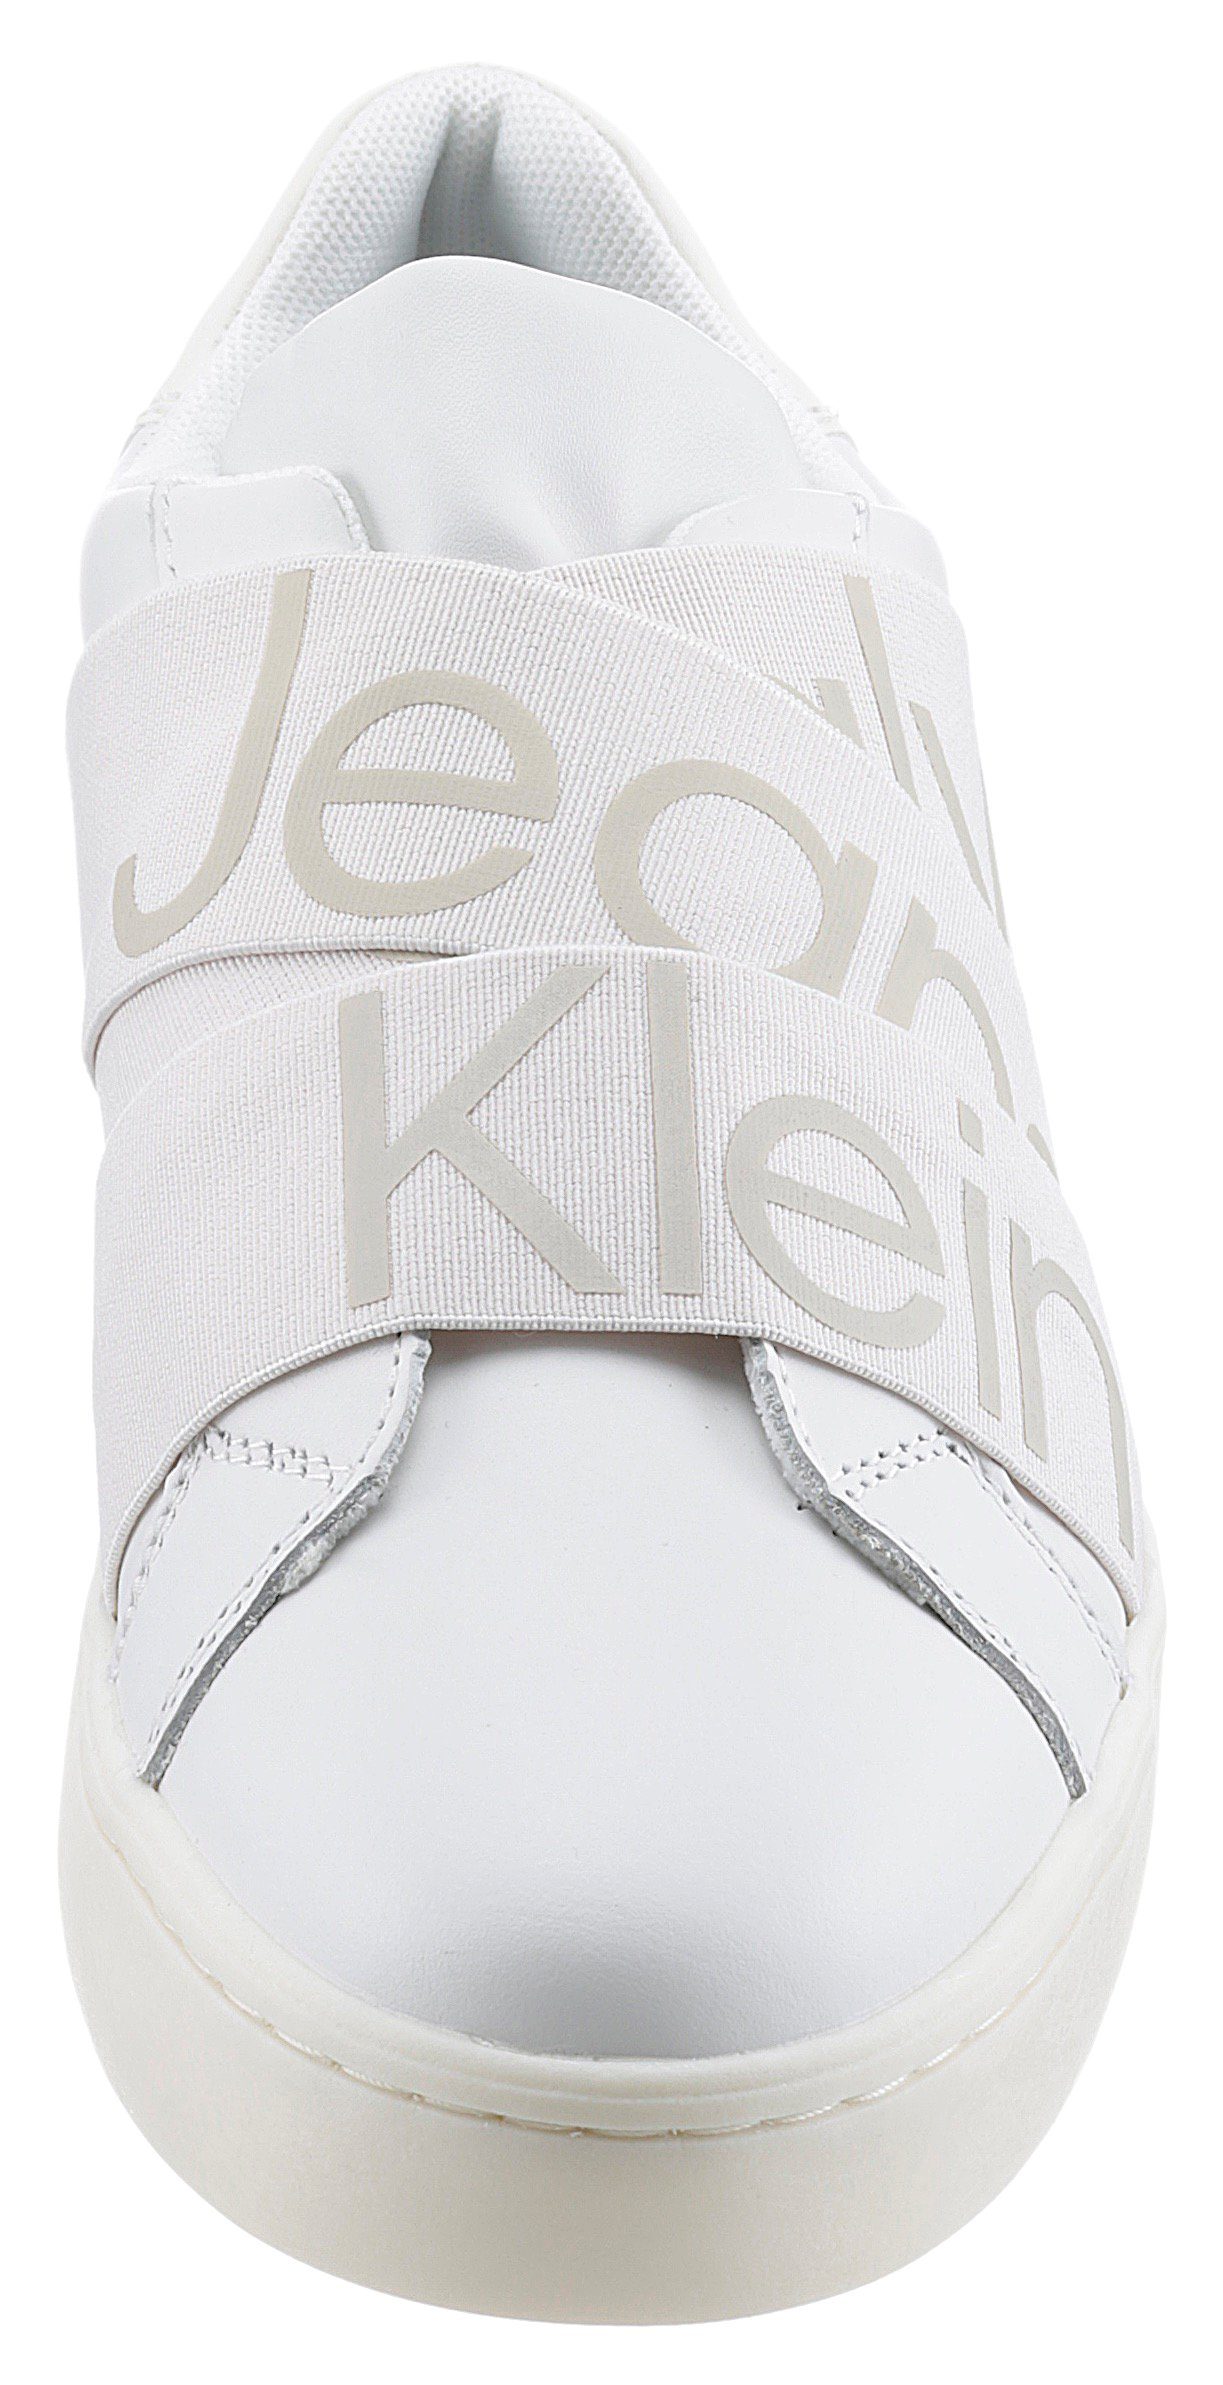 Calvin Klein Jeans SOLONA 24C *I Gummizug und Slip-On plakativem mit Logoschriftzug Sneaker weiß-hellbeige